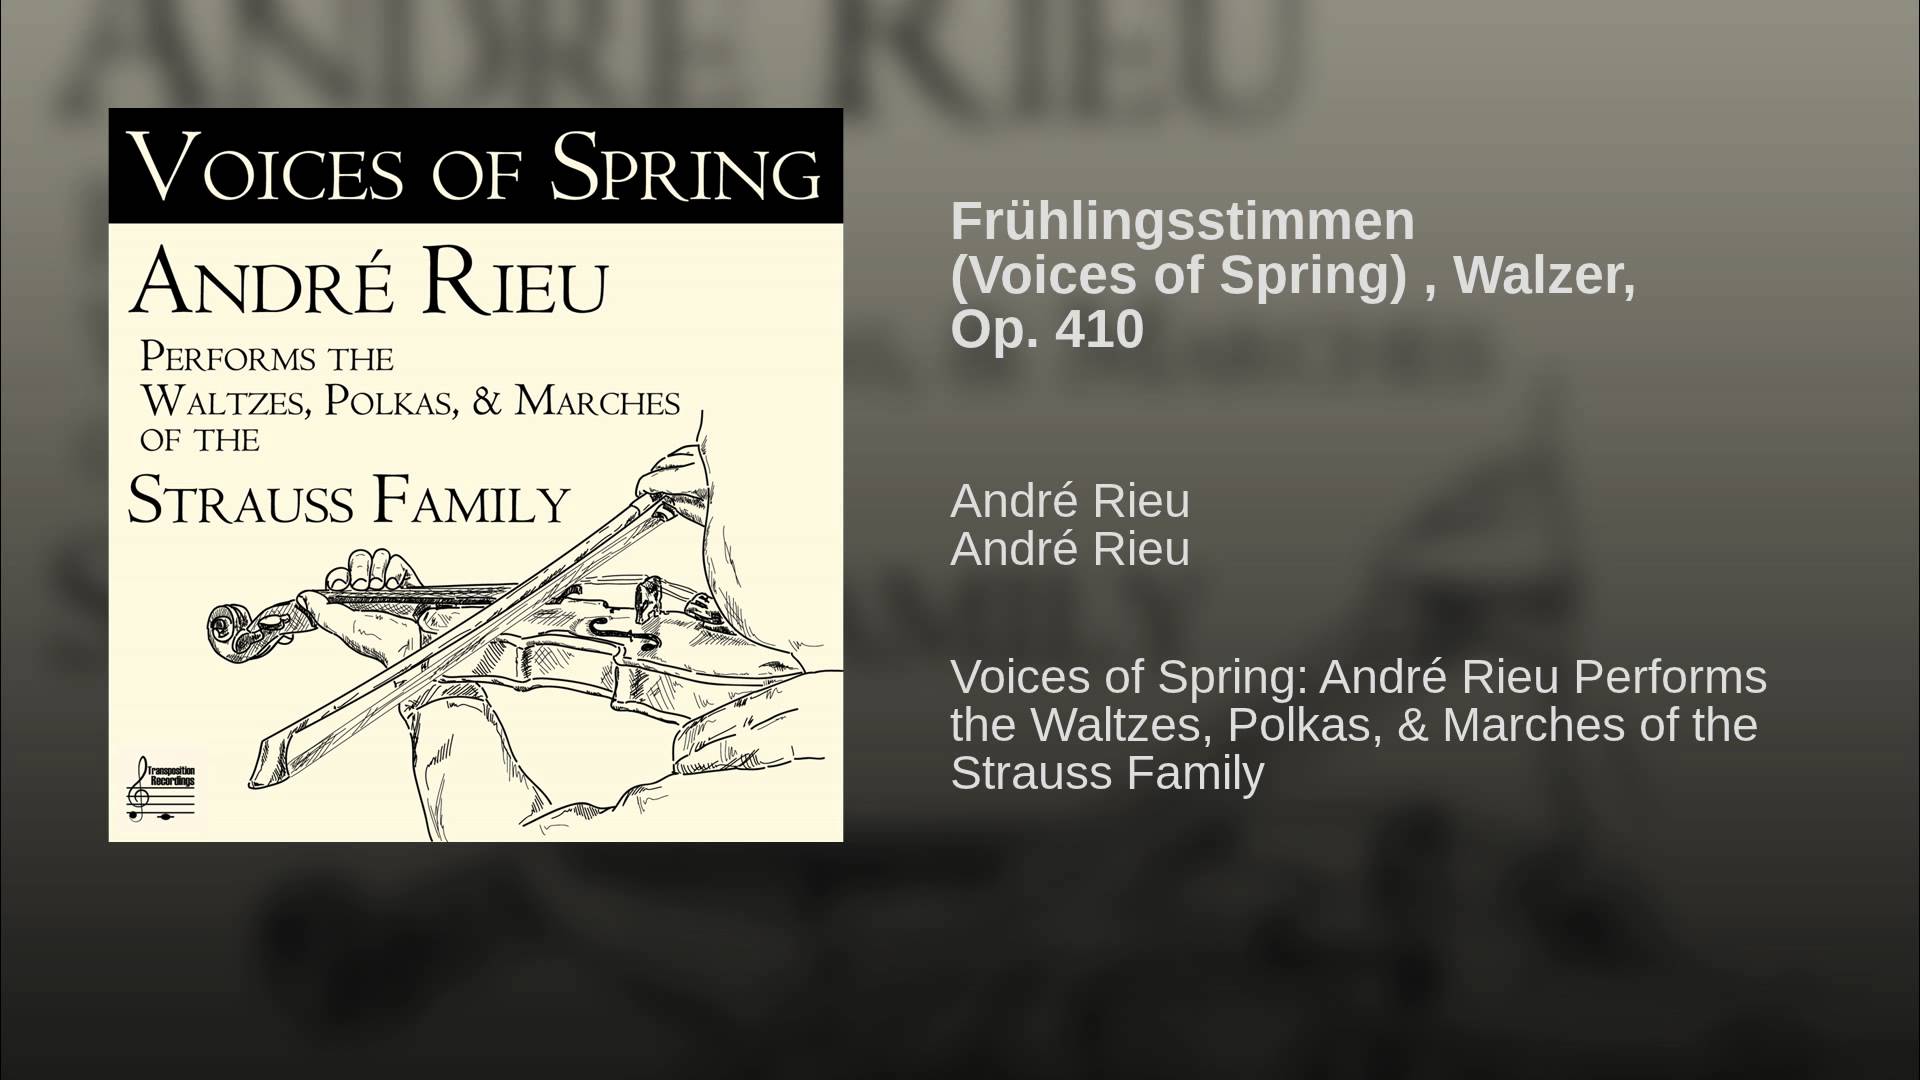 Frühlingsstimmen (Voices of Spring) , Walzer, Op. 410 - YouTube